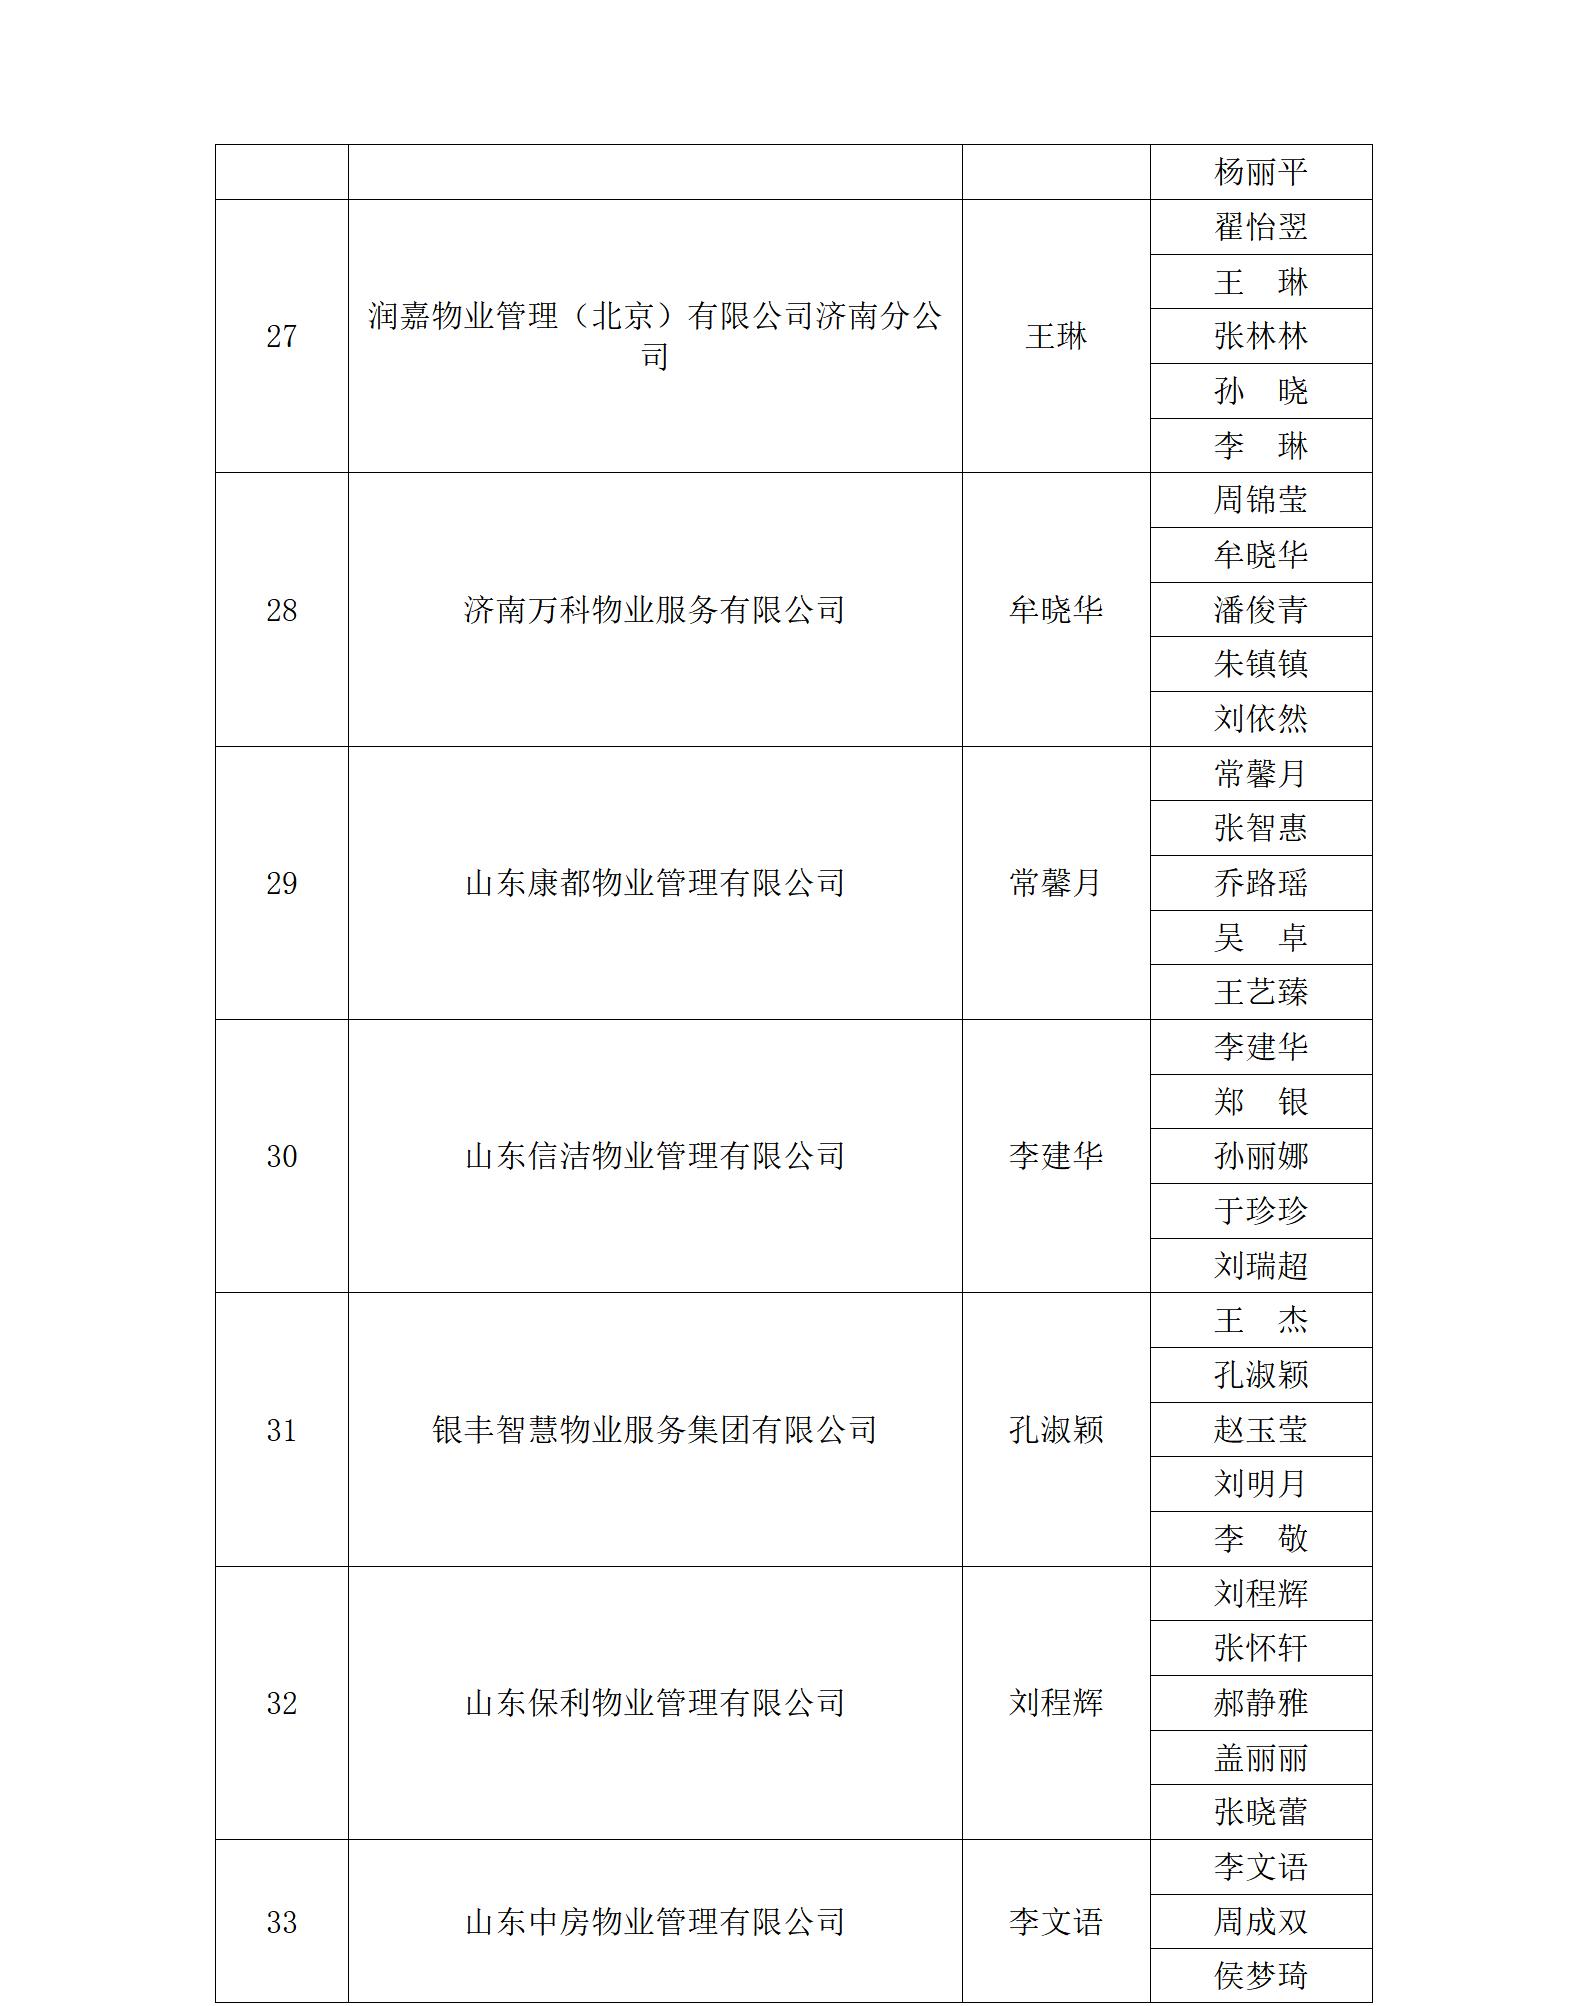 关于“明德杯”第六届济南市物业服务行业职业技能竞赛选手名单的公示_01